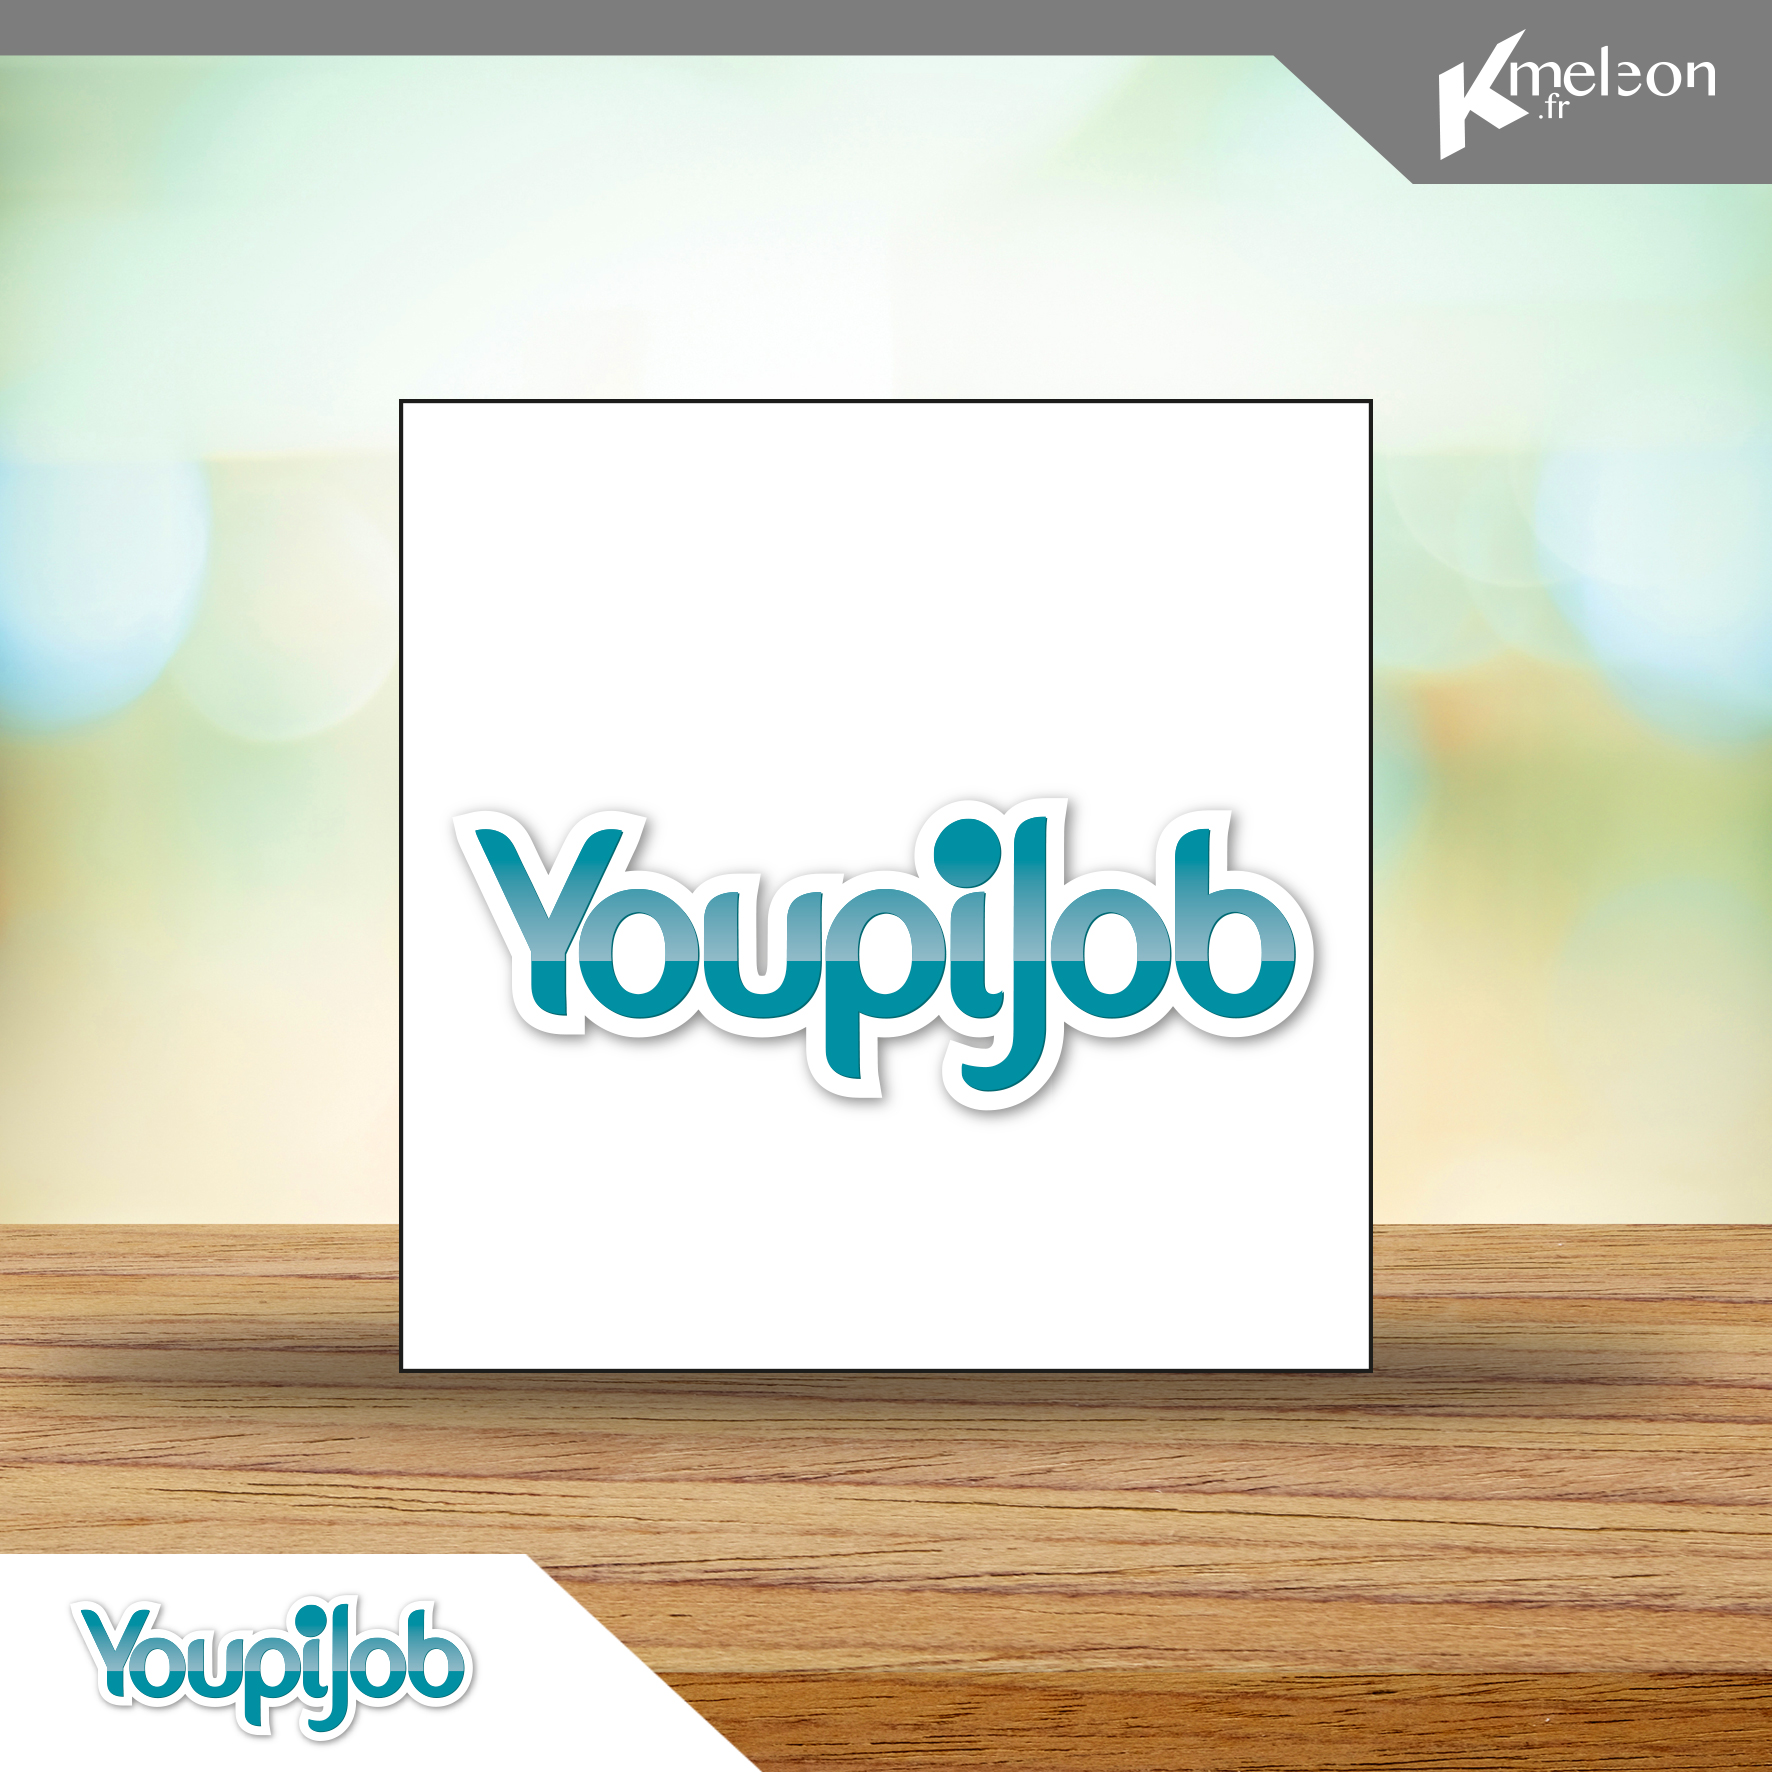 Création du logo Youpijob (plateforme N°1 en france du « jobbing » )